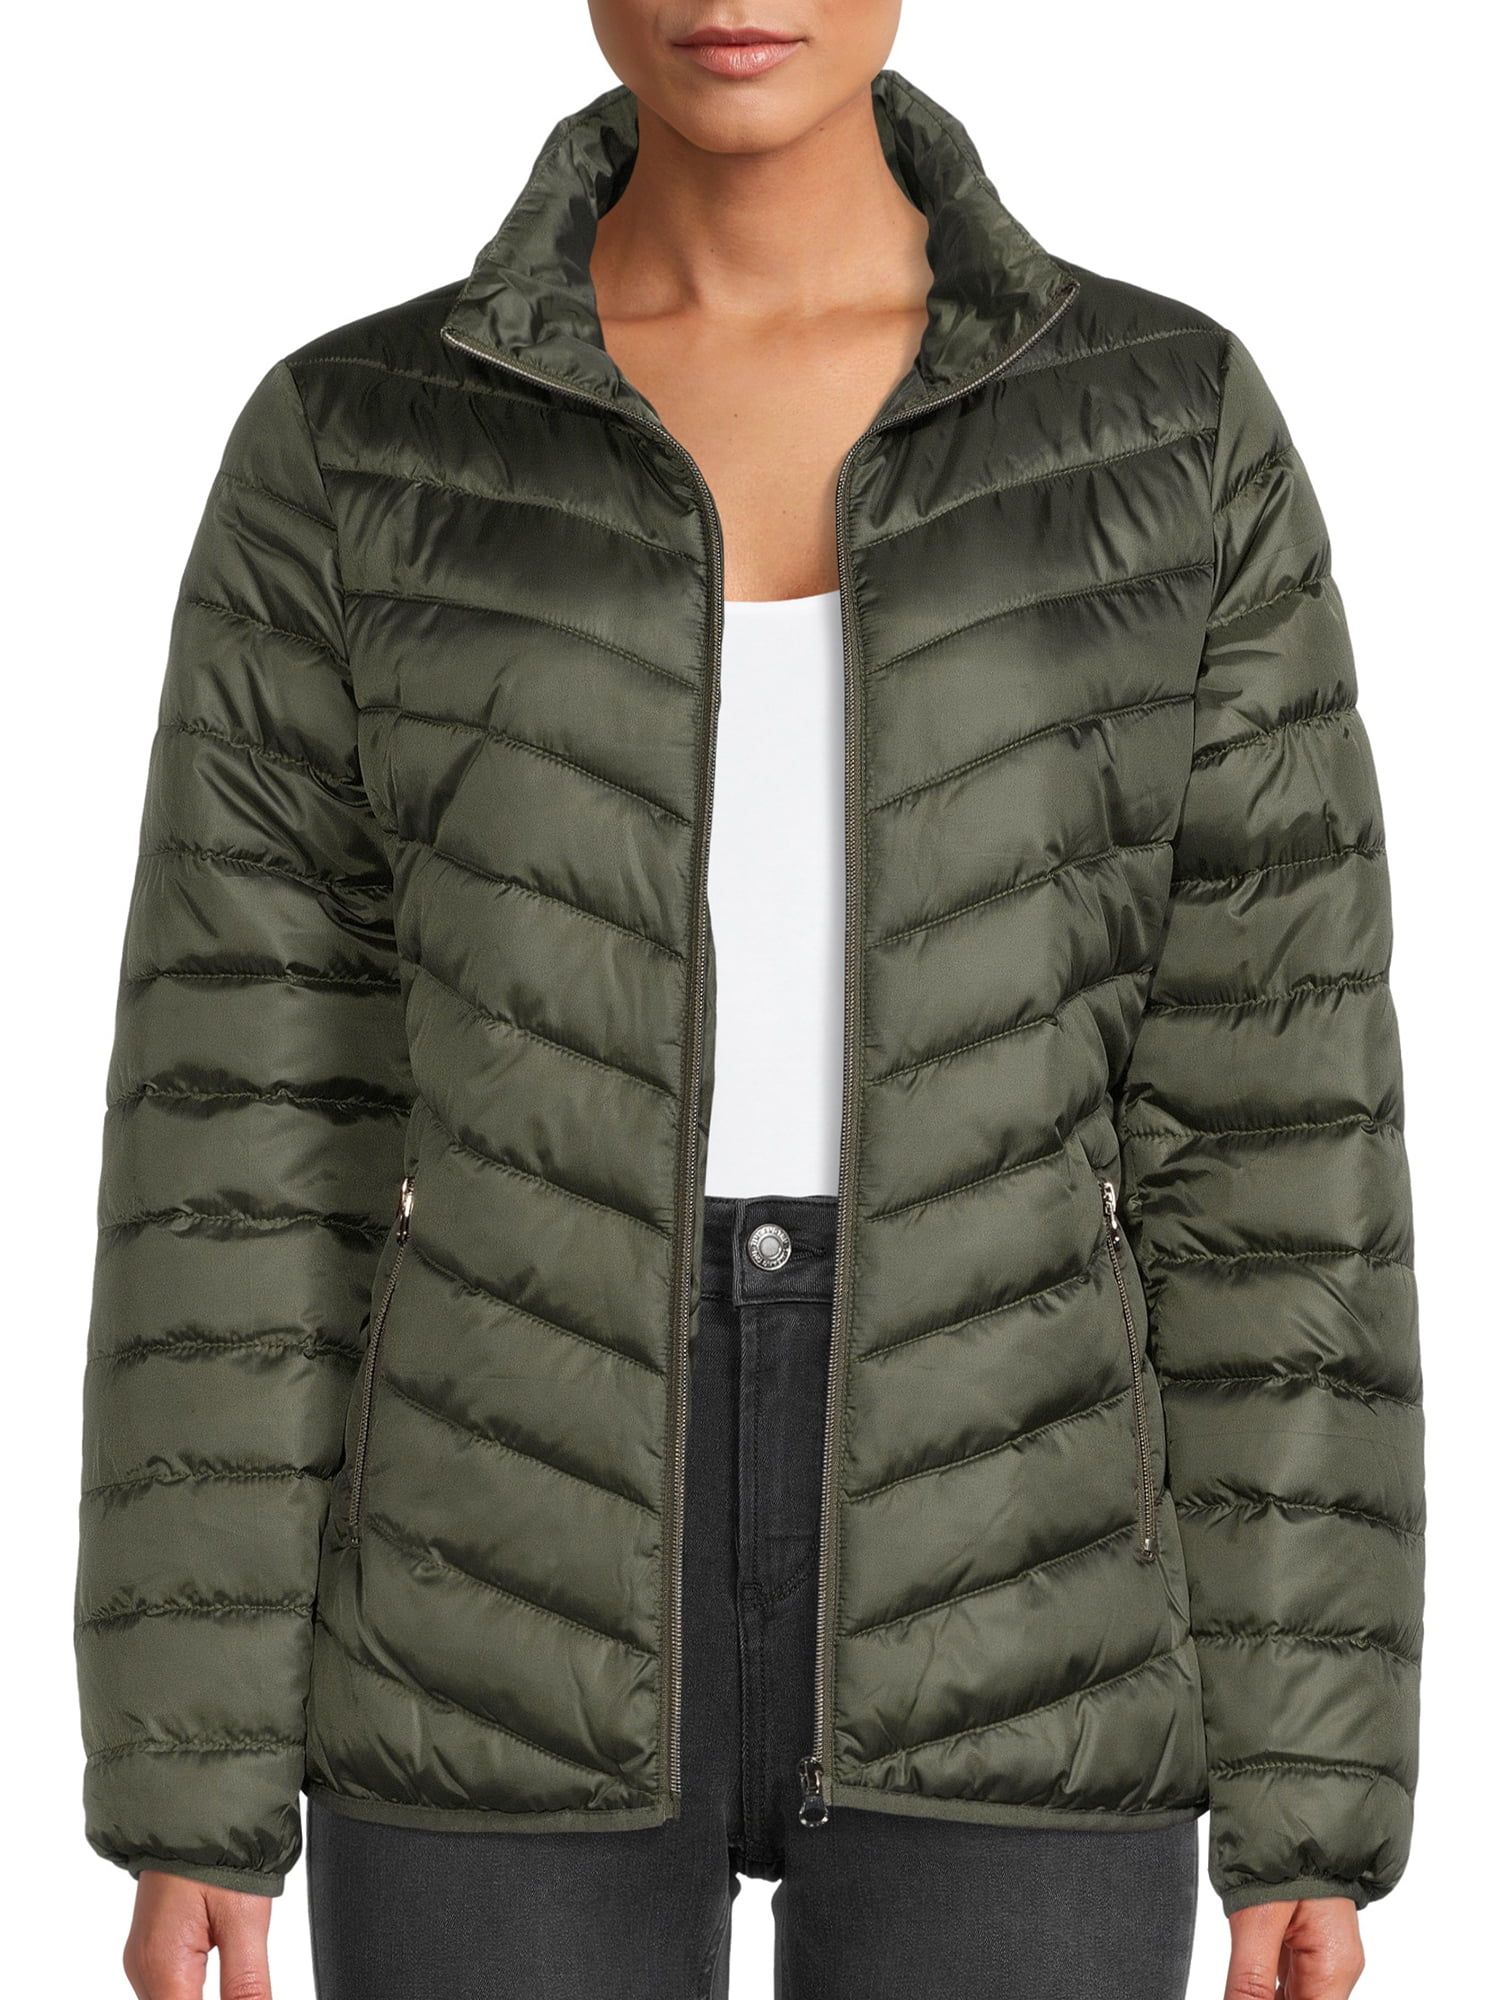 Big Chill Women's Packable Puffer Jacket, Sizes S-XL | Walmart (US)